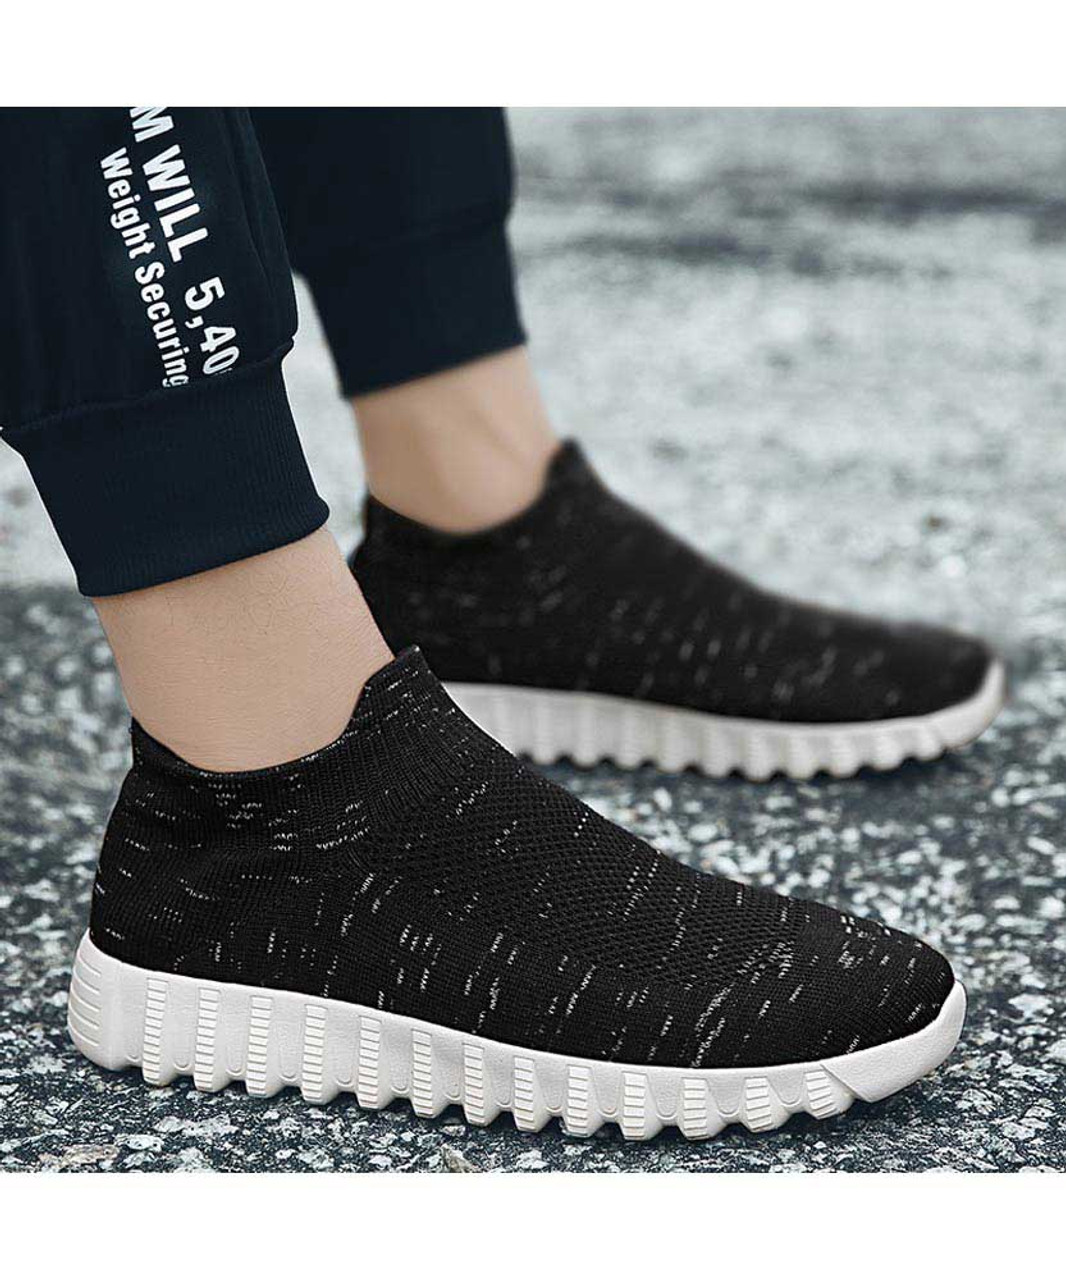 Black flyknit textured slip on sock like fit shoe sneaker | Mens shoe ...